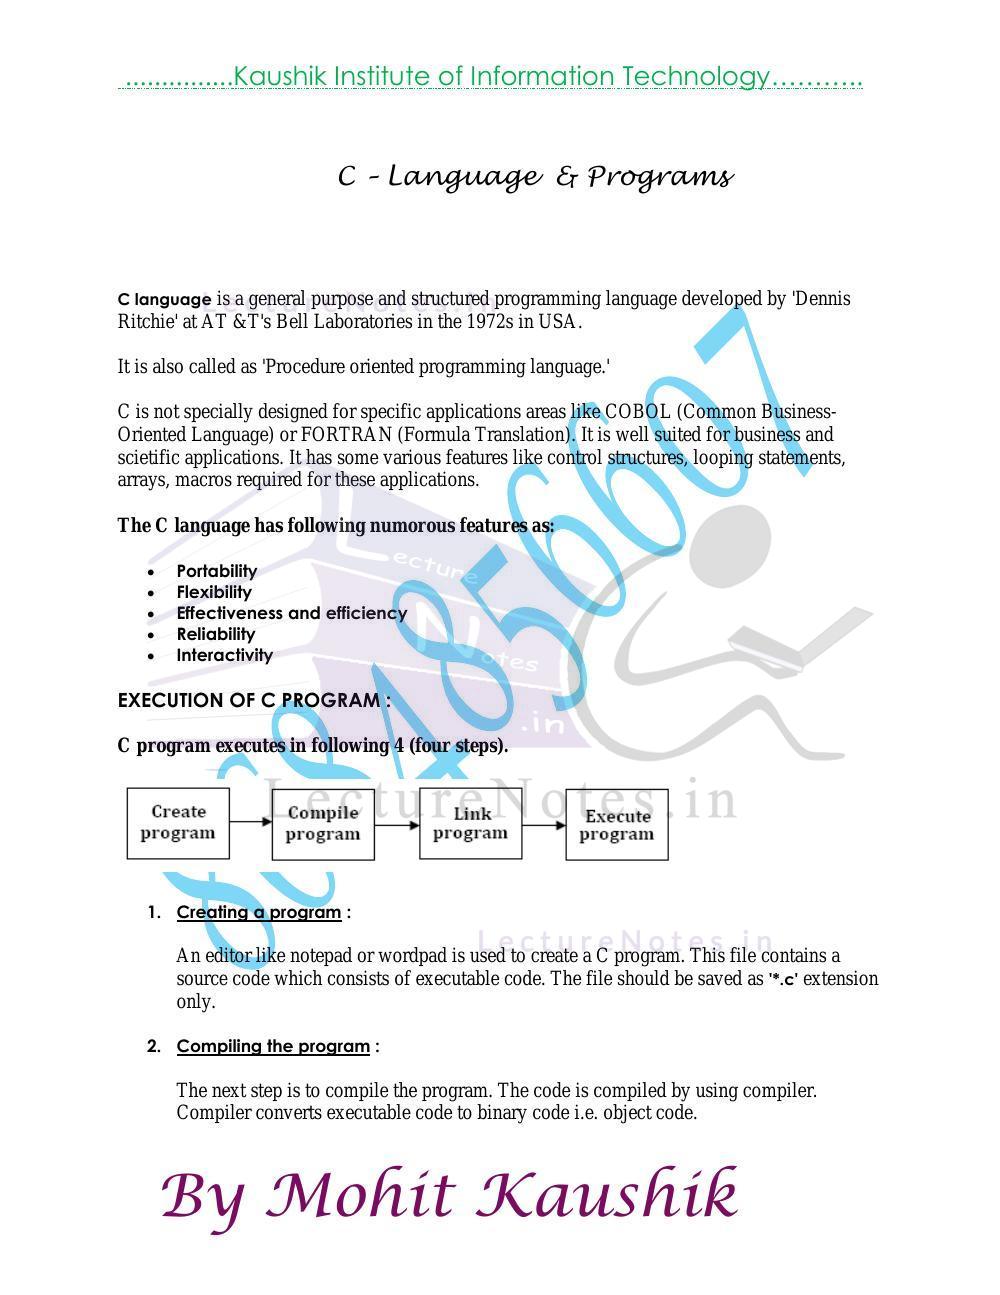 Ansi c language reference manual pdf